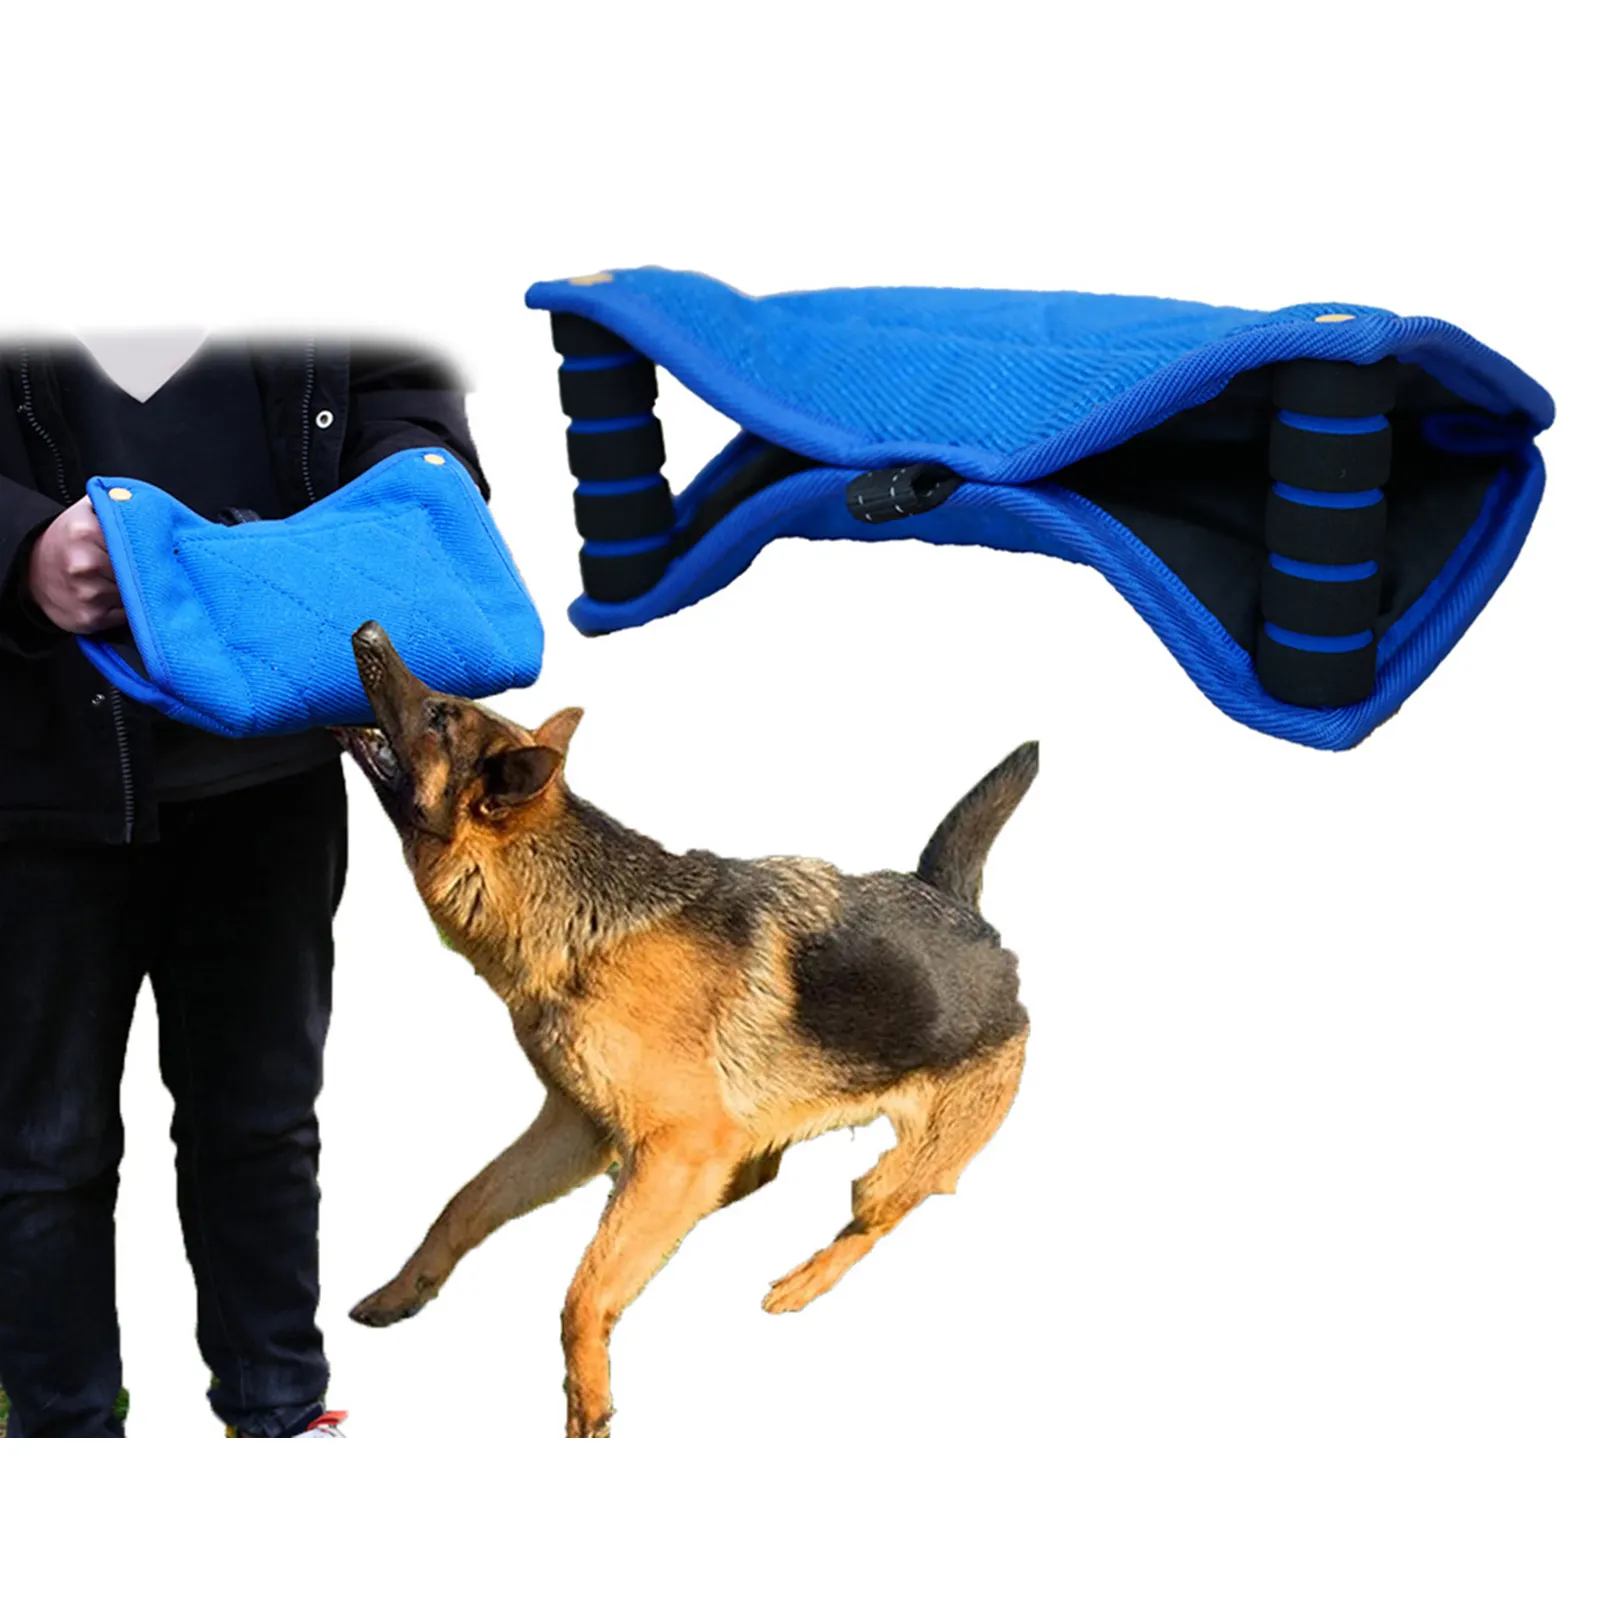 großhandel Schutz Hund beißen Ärmel Kissen 2 Griffe mit 1 Schlinge Zieh-Spielzeug Hund beißen Ärmel Trainingsgeräte